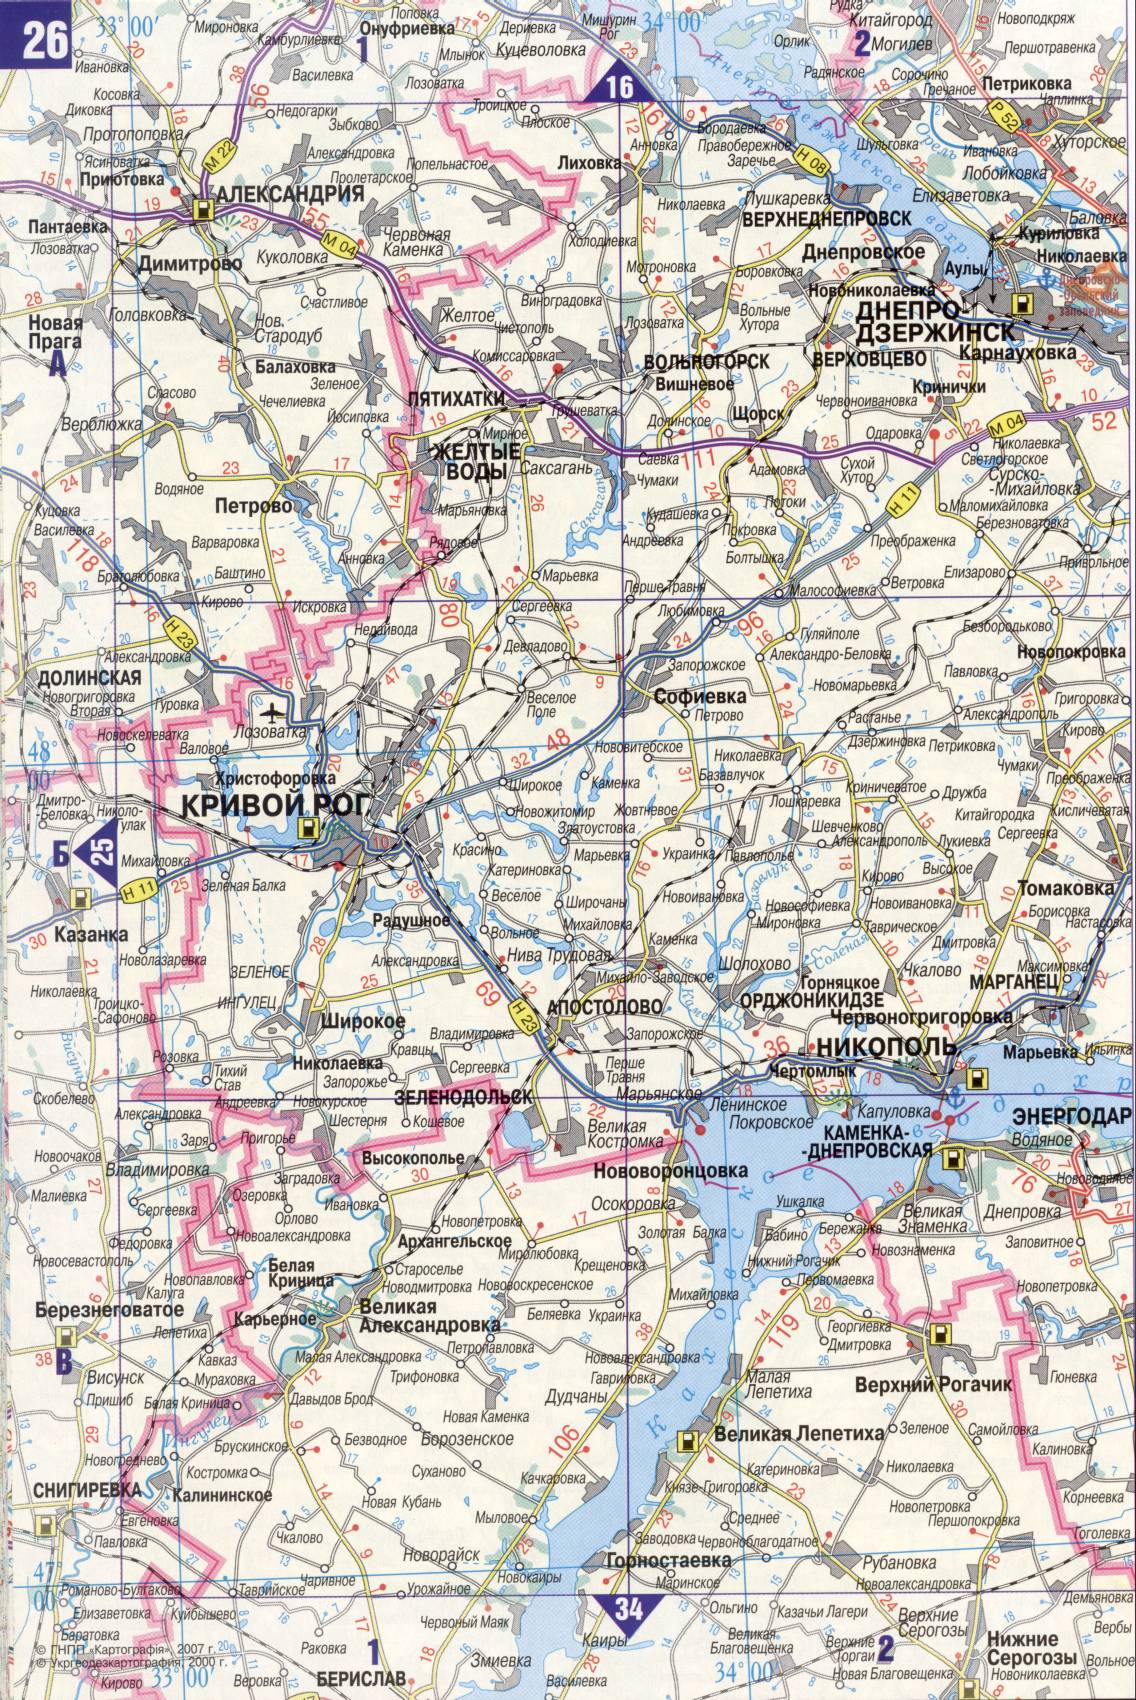 Karte der Ukraine. Detaillierte Straßenkarte der Ukraine avtomobilnog Satin. kostenlos herunterladen, G2